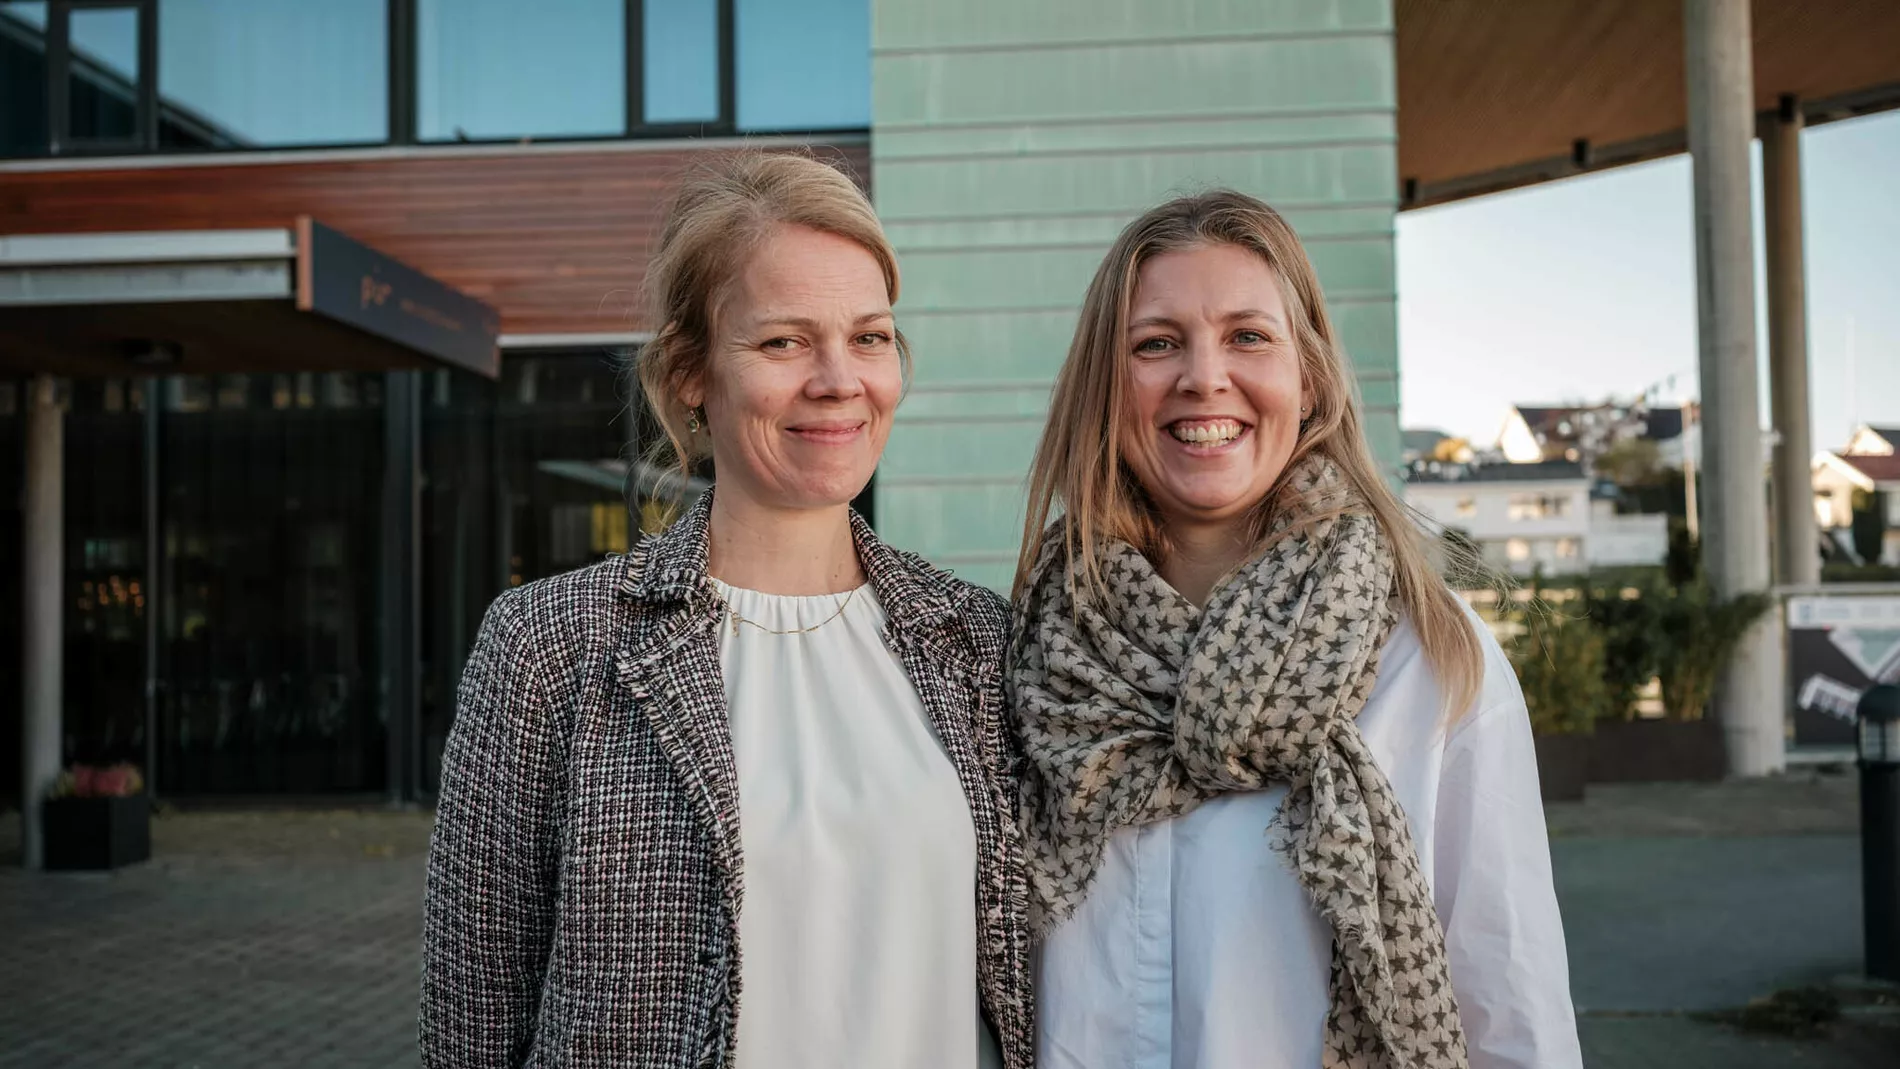 Anna Klara Maaseide og Ellen Skodjevåg Bø Bjørkedal 2